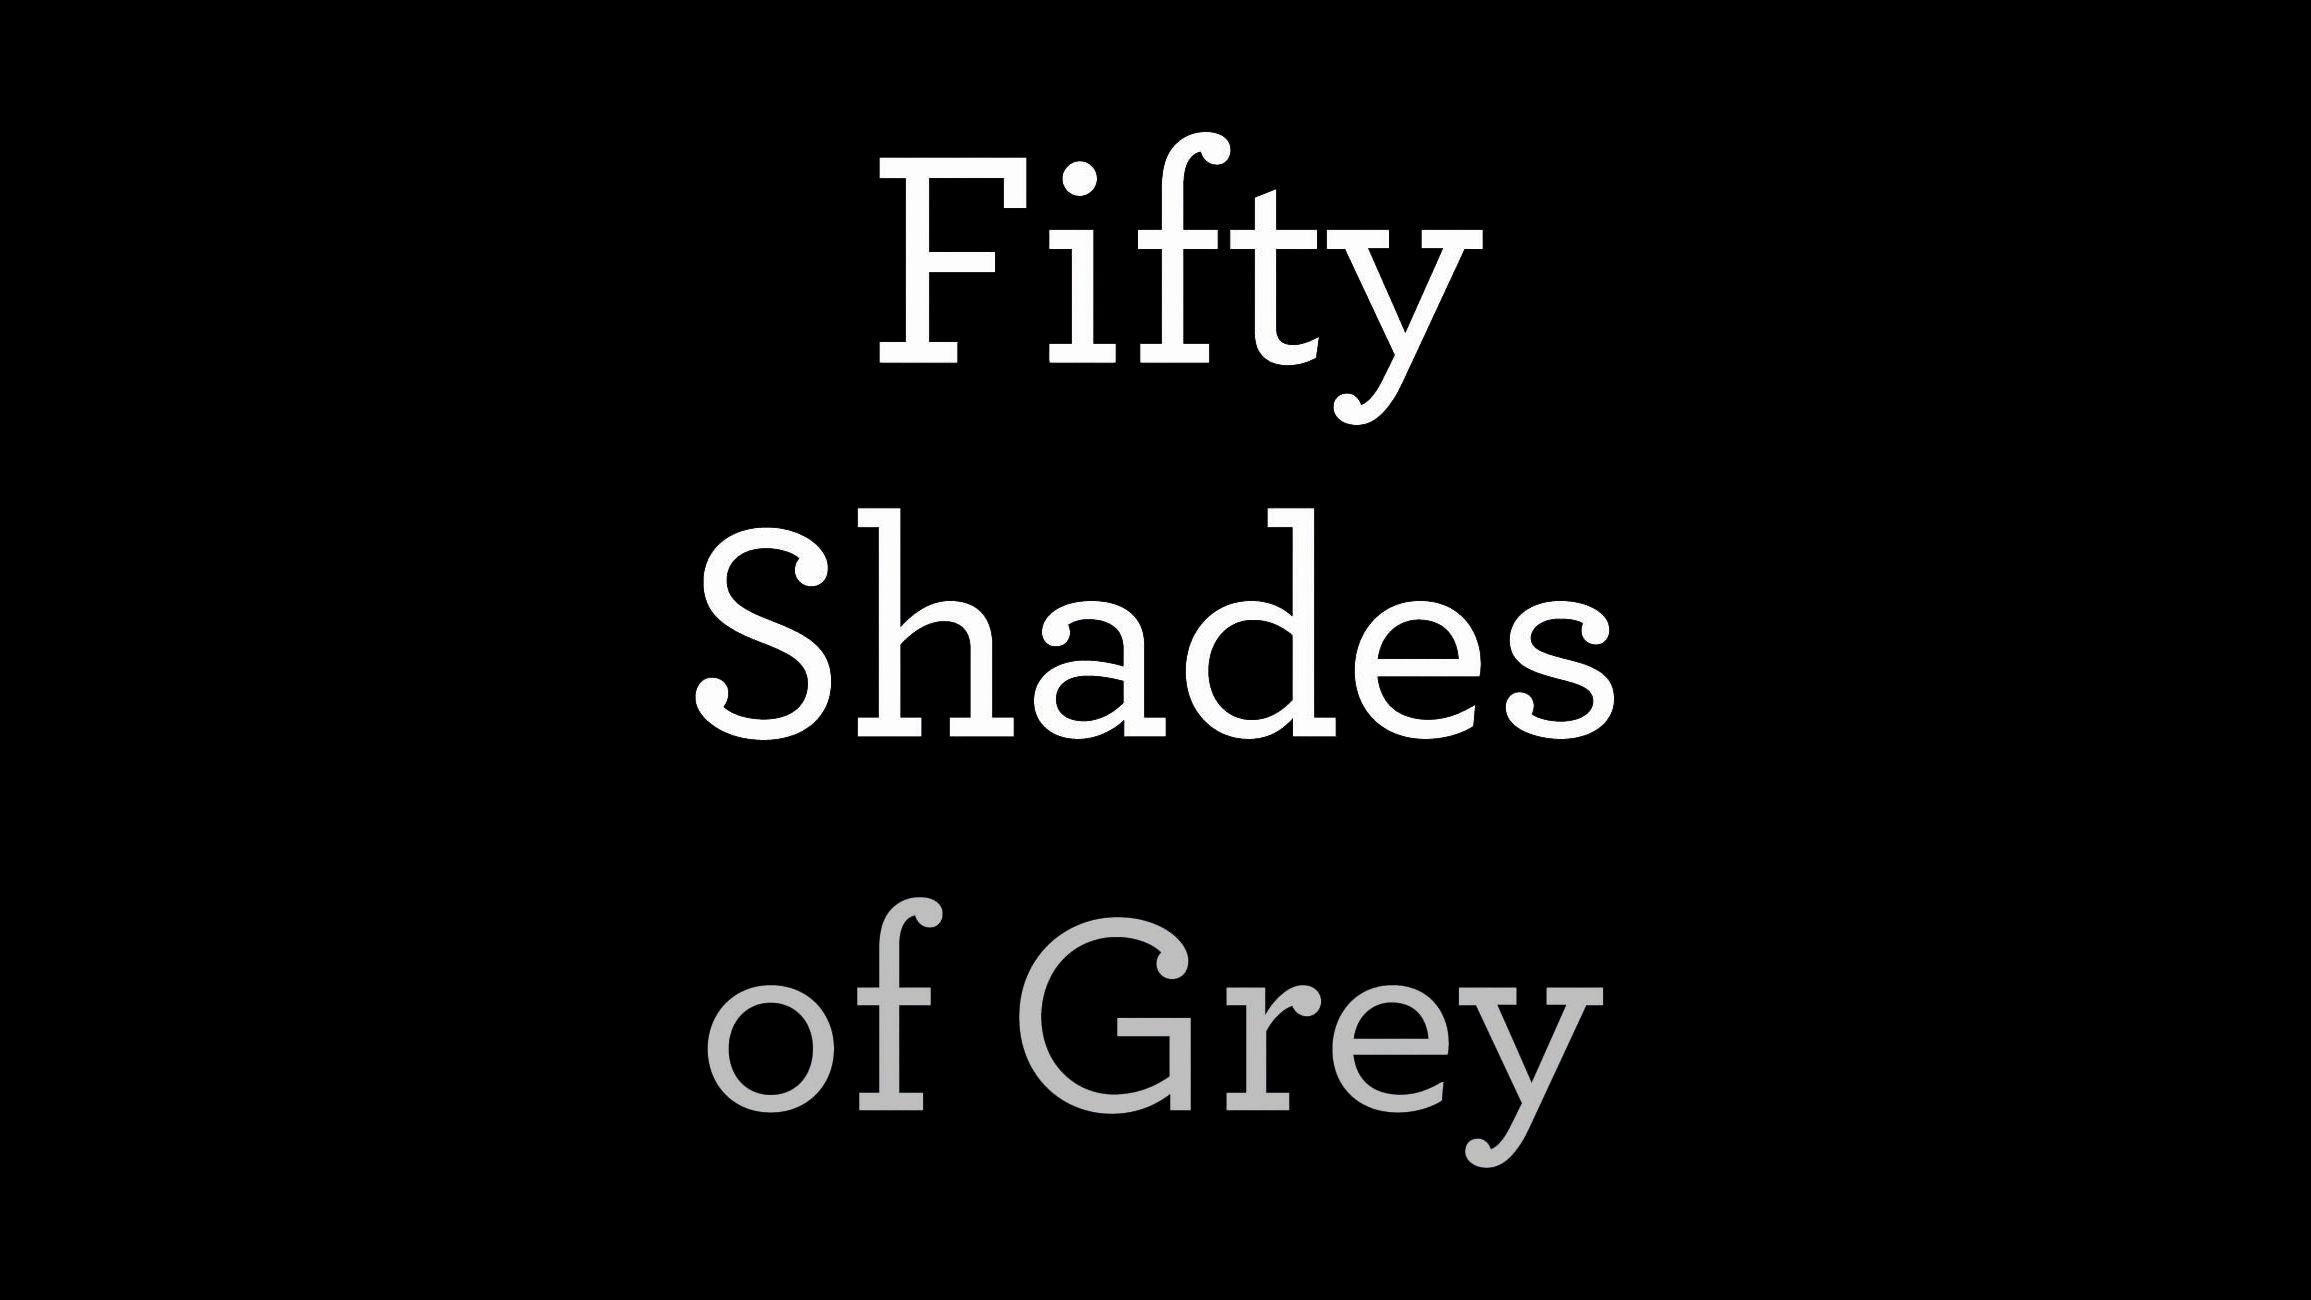 50 Shades of Grey Logo - Fifty Shades of Grey (film)